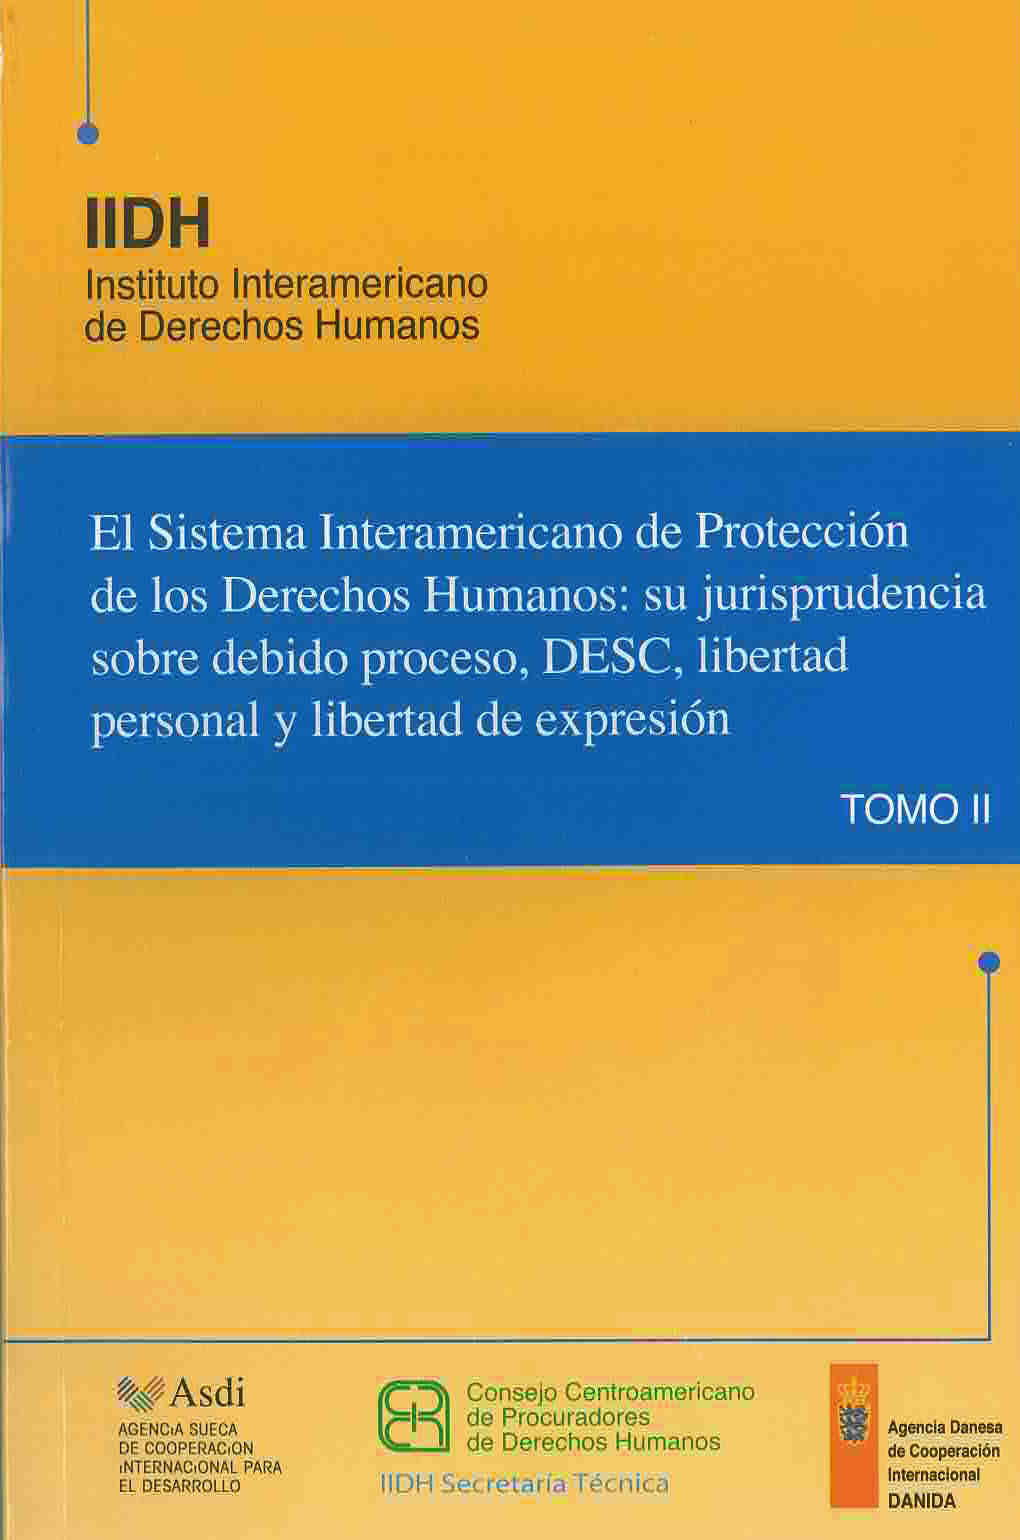 El sistema interamericano de protección de los derechos humanos: su jurisprudencia sobre debido proceso, DESC, Libertad personal y libertad de expresión